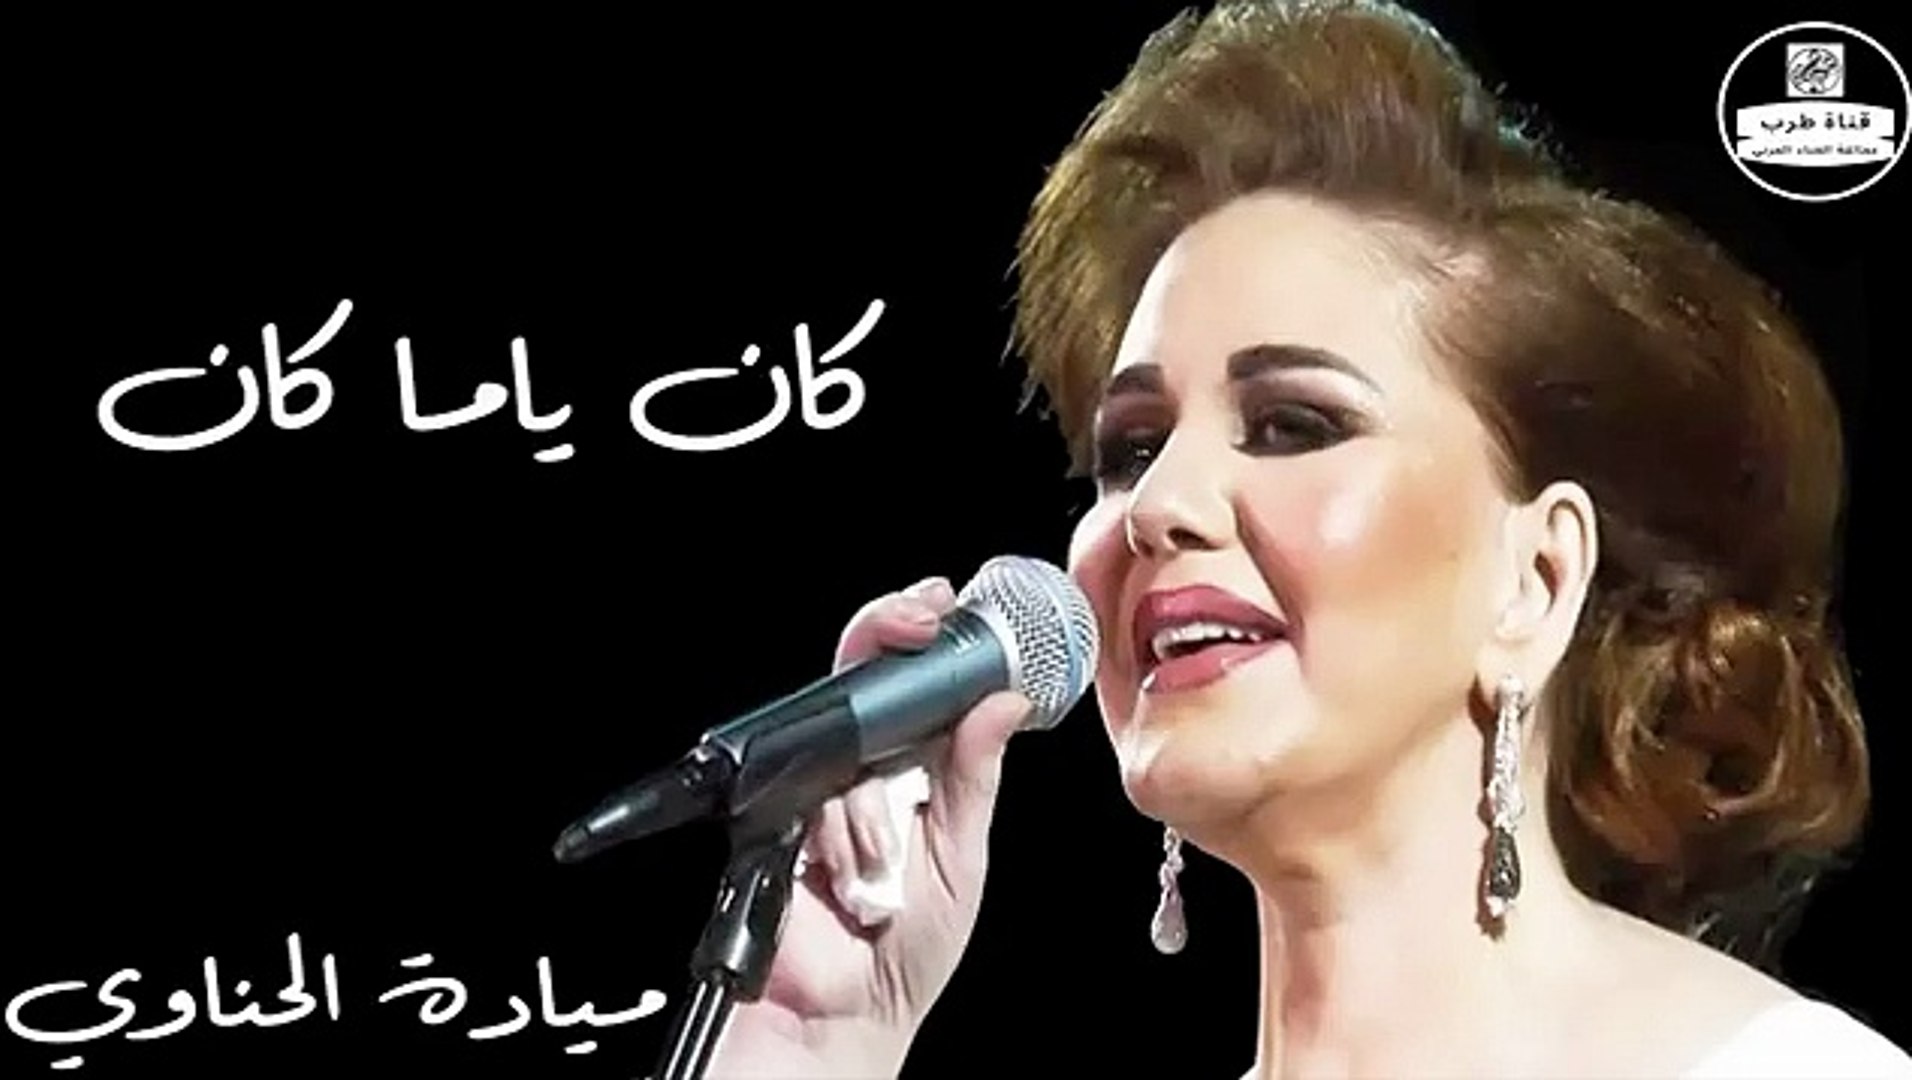 ميادة الحناوي - كان ياما كان - Mayada El Hennawy - فيديو Dailymotion